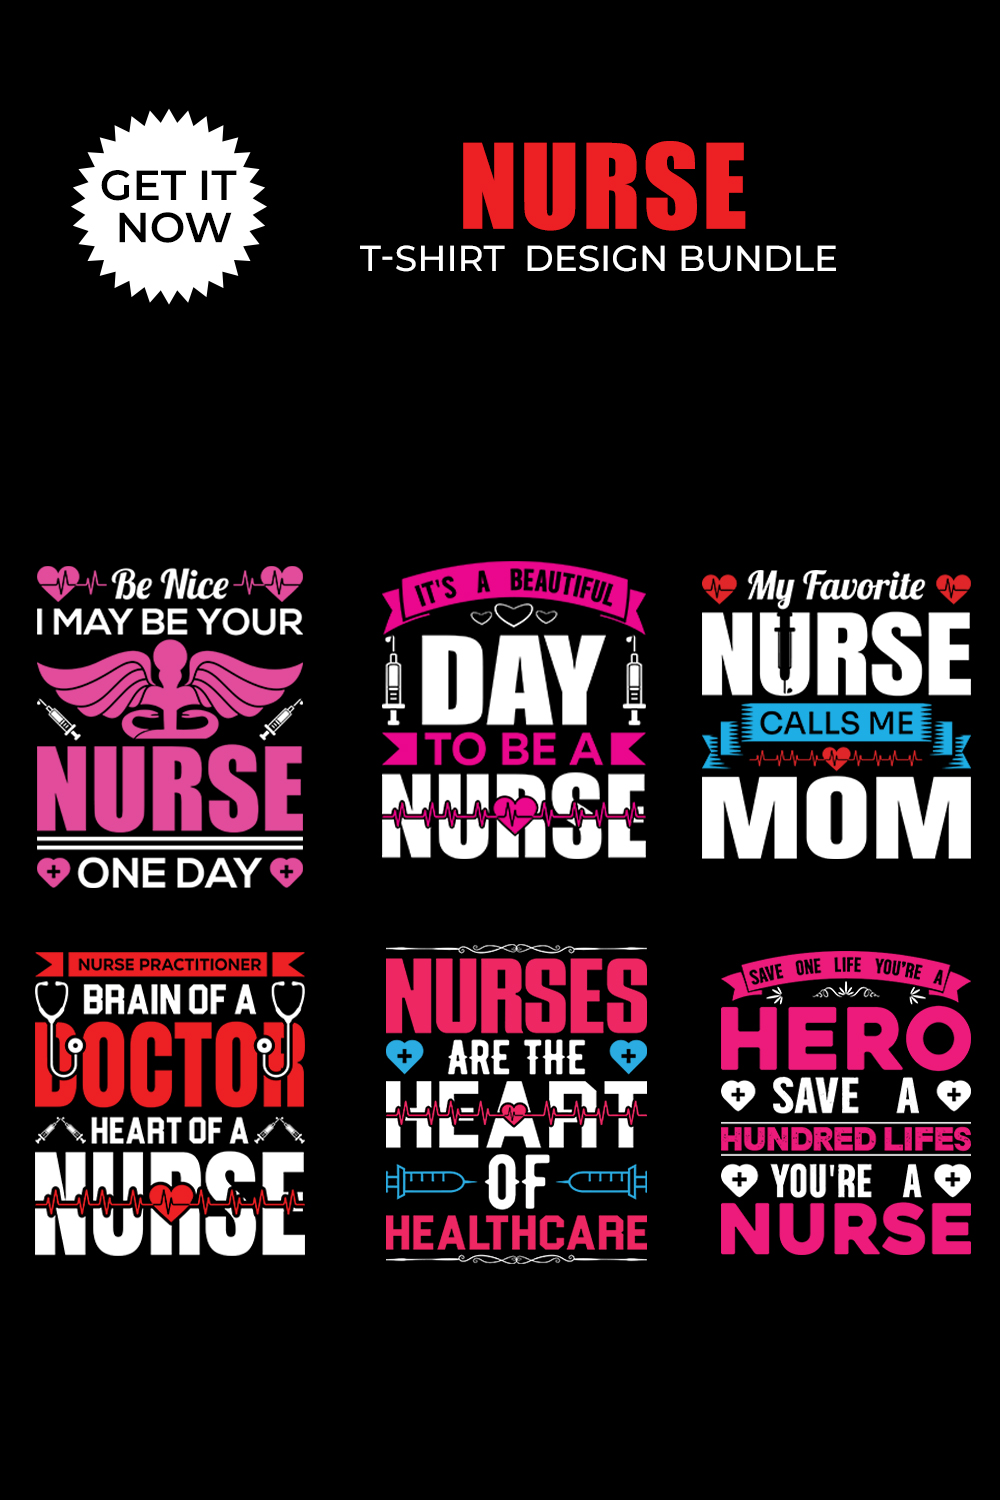 6 creative and unique t shirt design bundle Typography t shirt design bundle pinterest preview image.